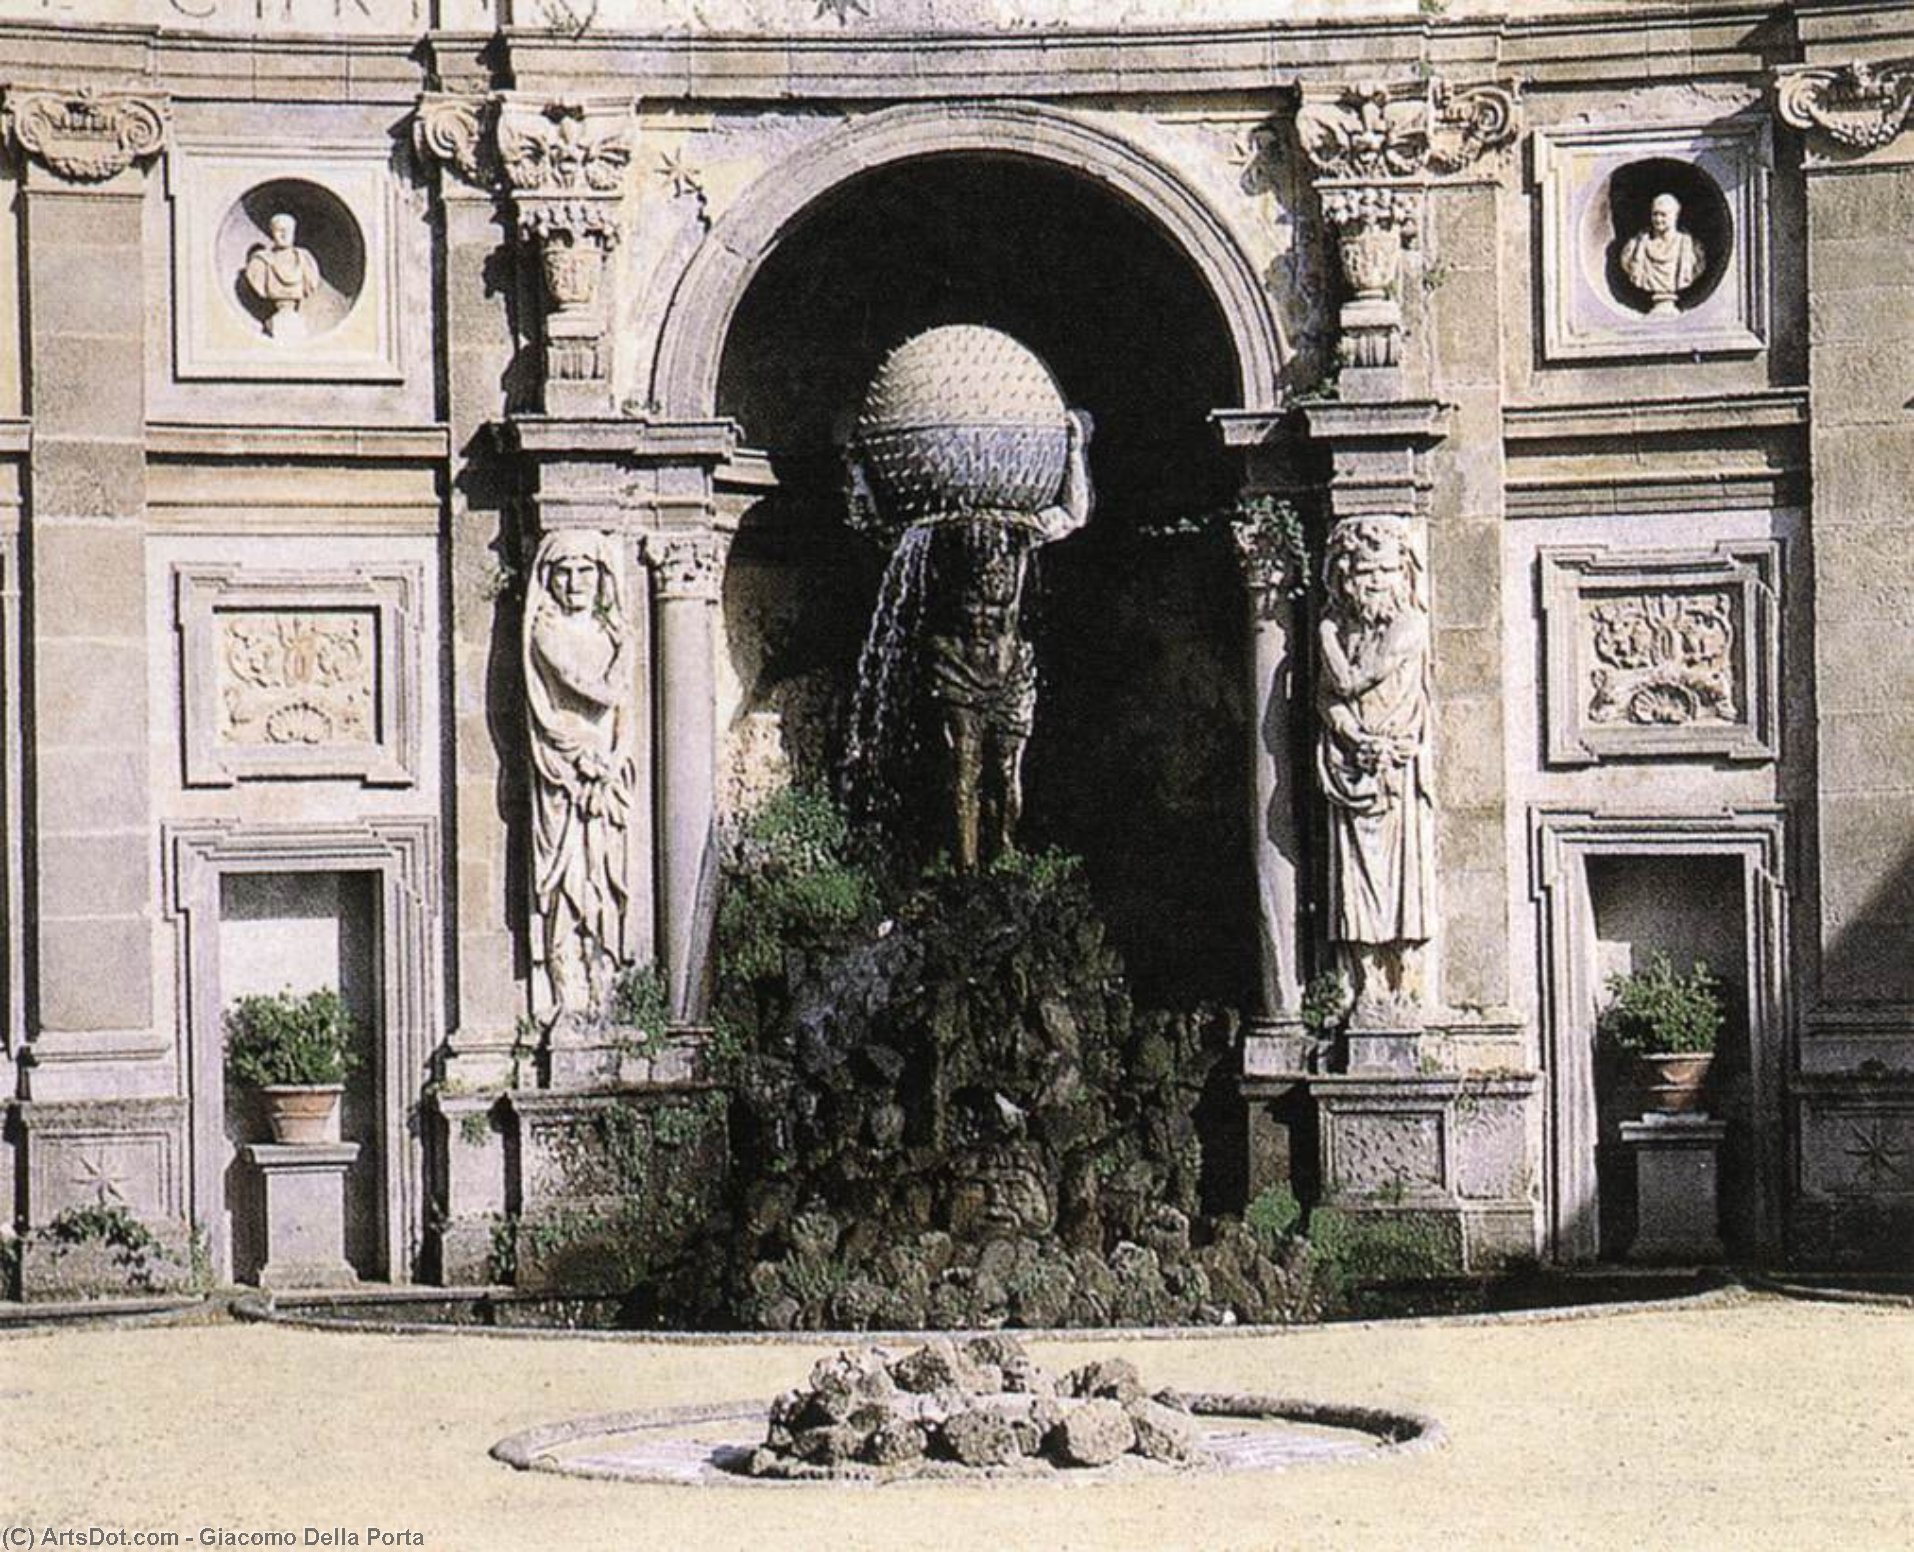 WikiOO.org - 백과 사전 - 회화, 삽화 Giacomo Della Porta - Atlas Fountain (detail)